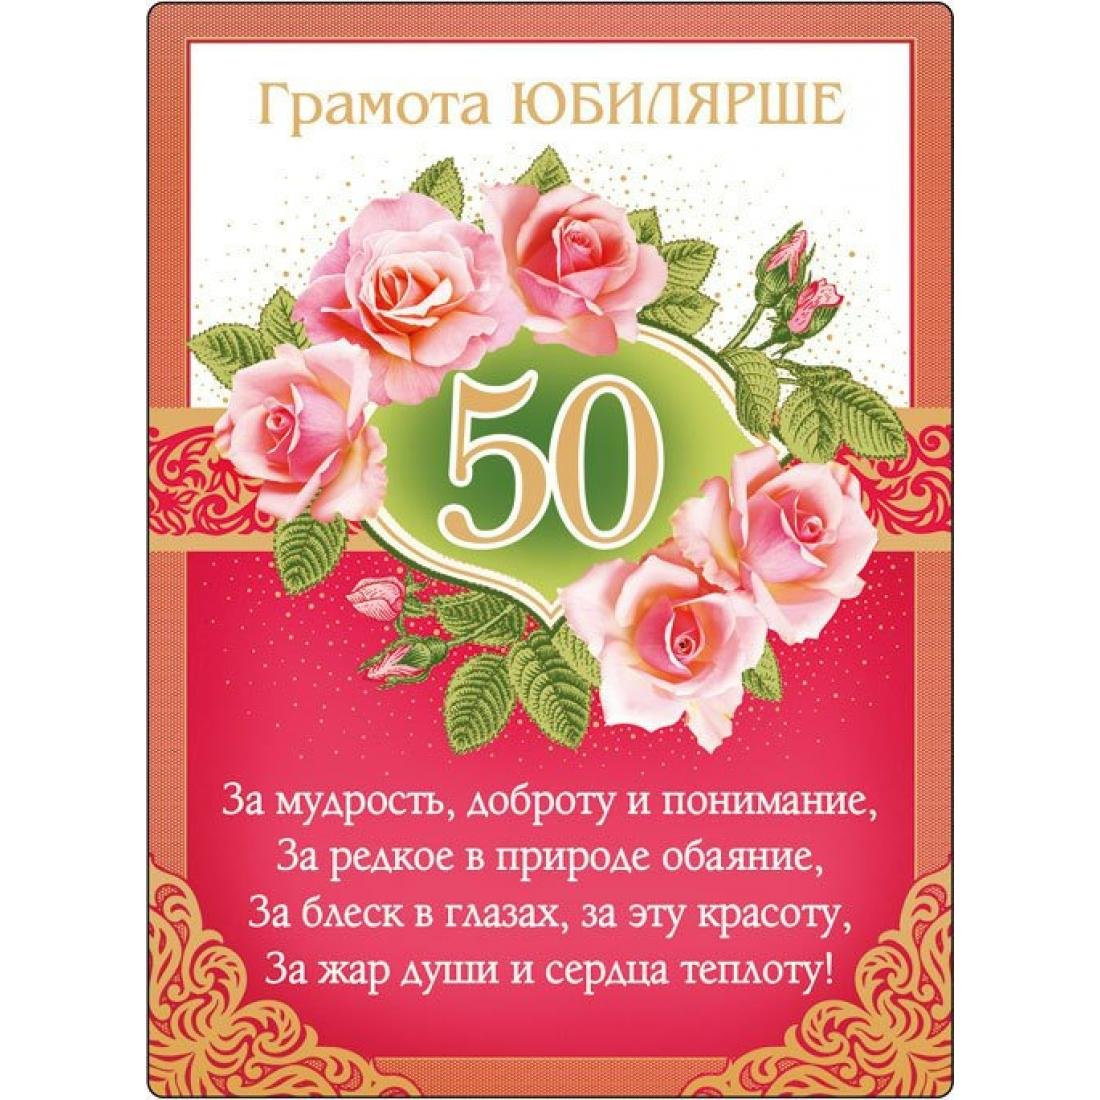 День рождение пятьдесят. Поздравление с юбилеем 50. С юбилеем 50 лет женщине. Поздравление с юбилеем женщине 50. Открытка с юбилеем 50 лет женщине.